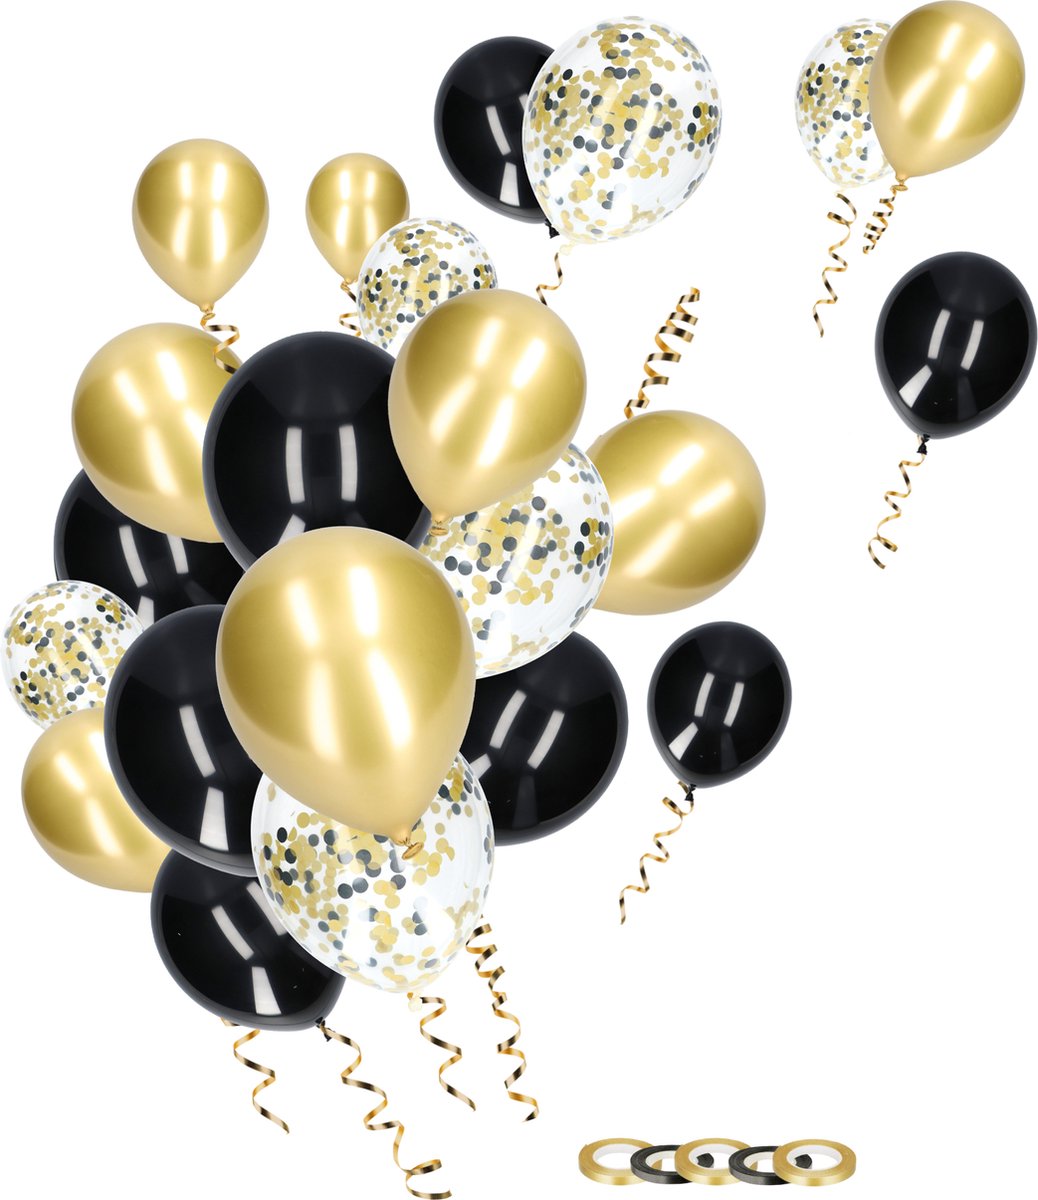 Partizzle 50x Papieren Confetti & Latex Helium Ballonnen - Verjaardag Abraham Sarah Versiering - Oud en Nieuw - Nieuwjaar - Kerst - Ballonnenboog Decoratie Maken - Zwart & Goud - Partizzle®